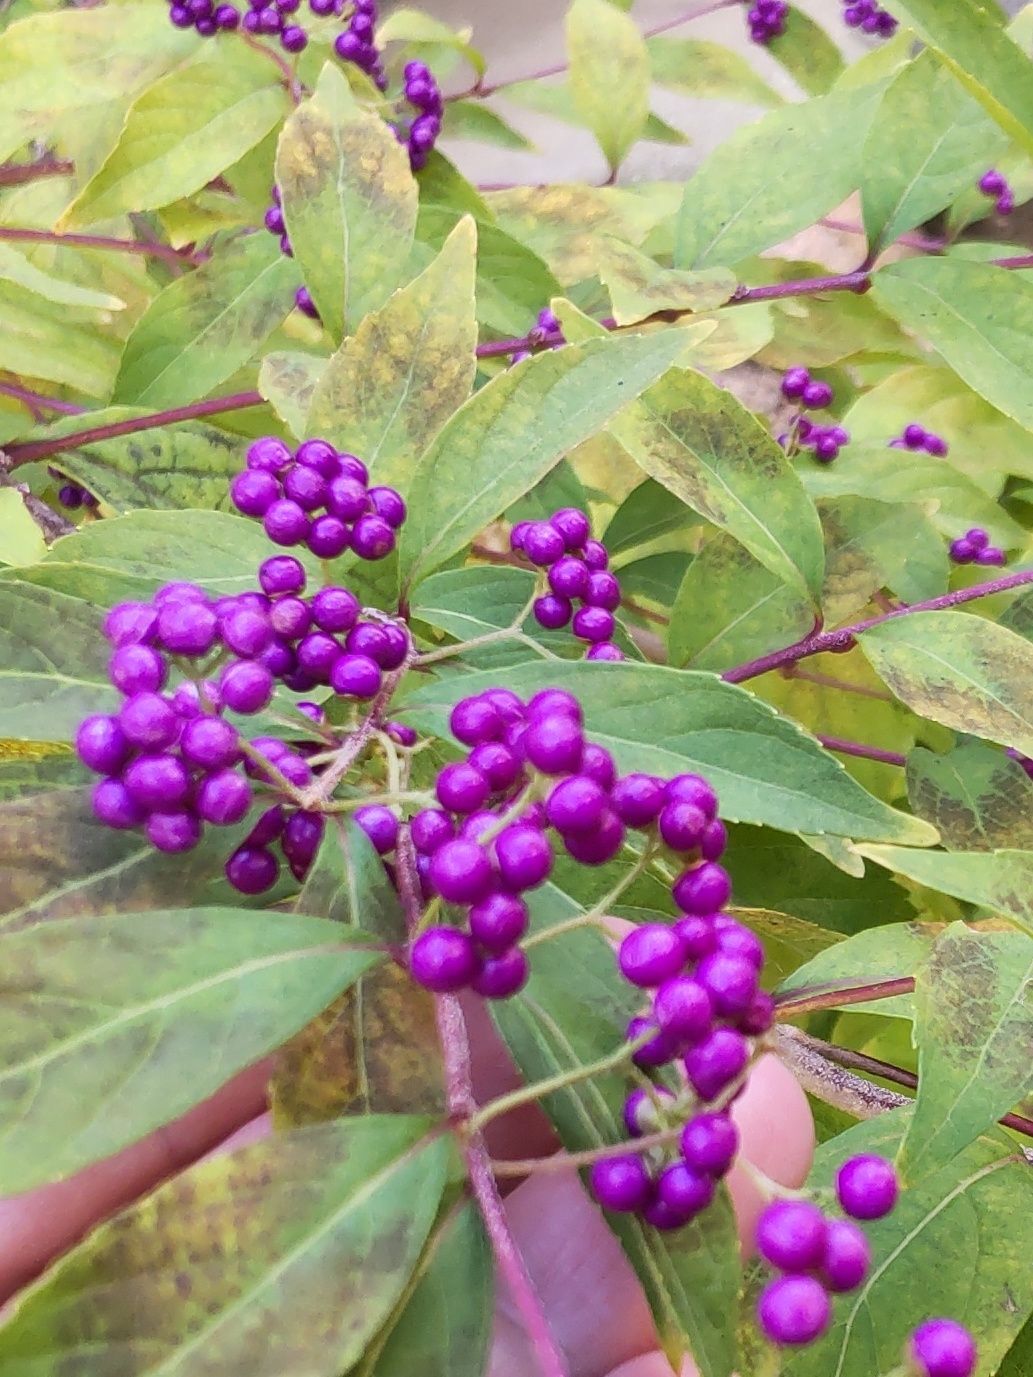 とても綺麗な紫色の実です。「毒」はあるの？触っても大丈夫？